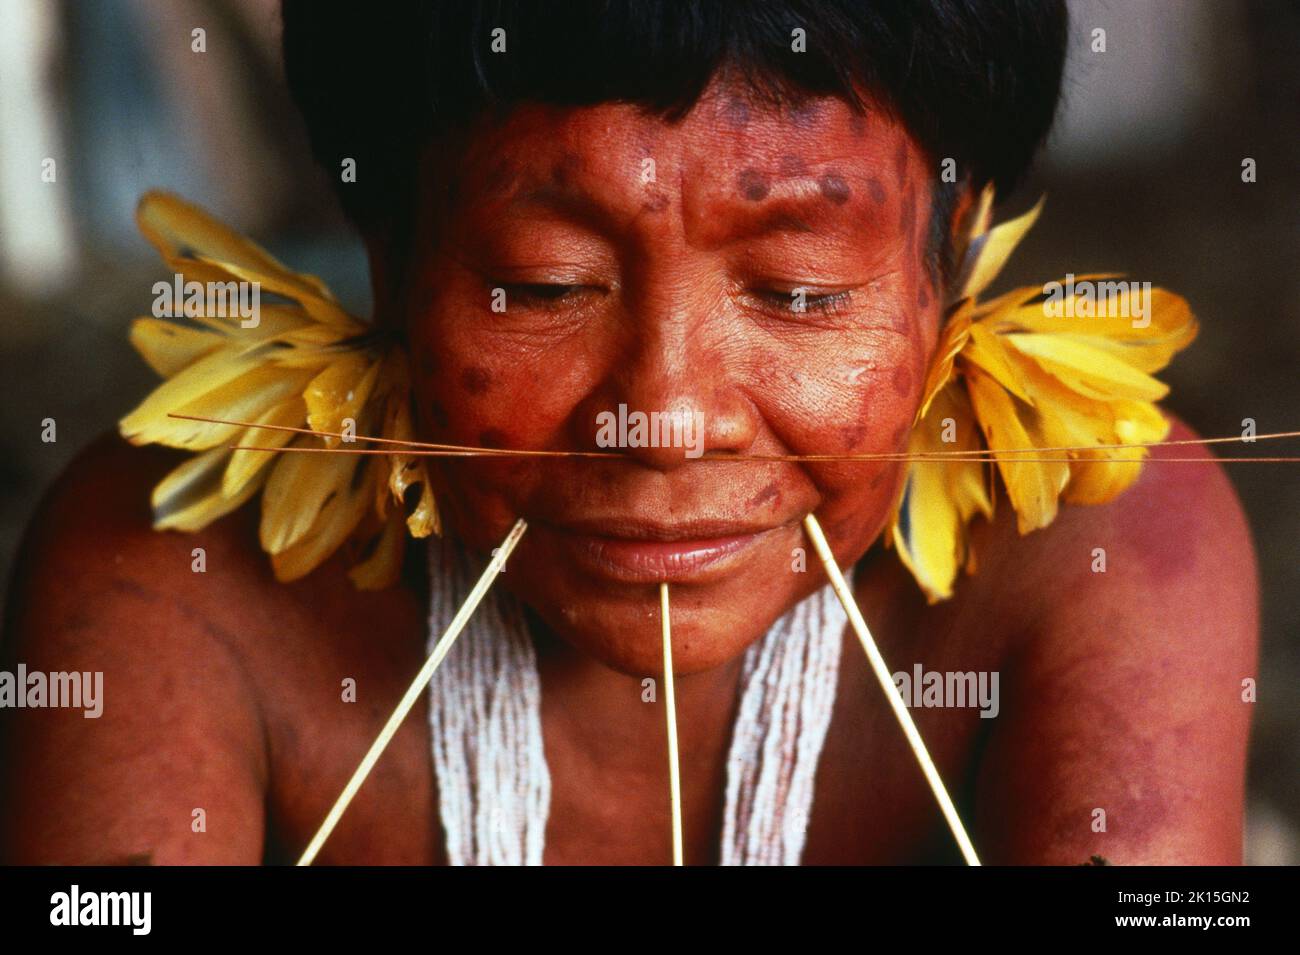 Porträt eines indischen Jungen aus Yanomami. Amazonas-Dschungelbewohner aus Südamerika. Stockfoto